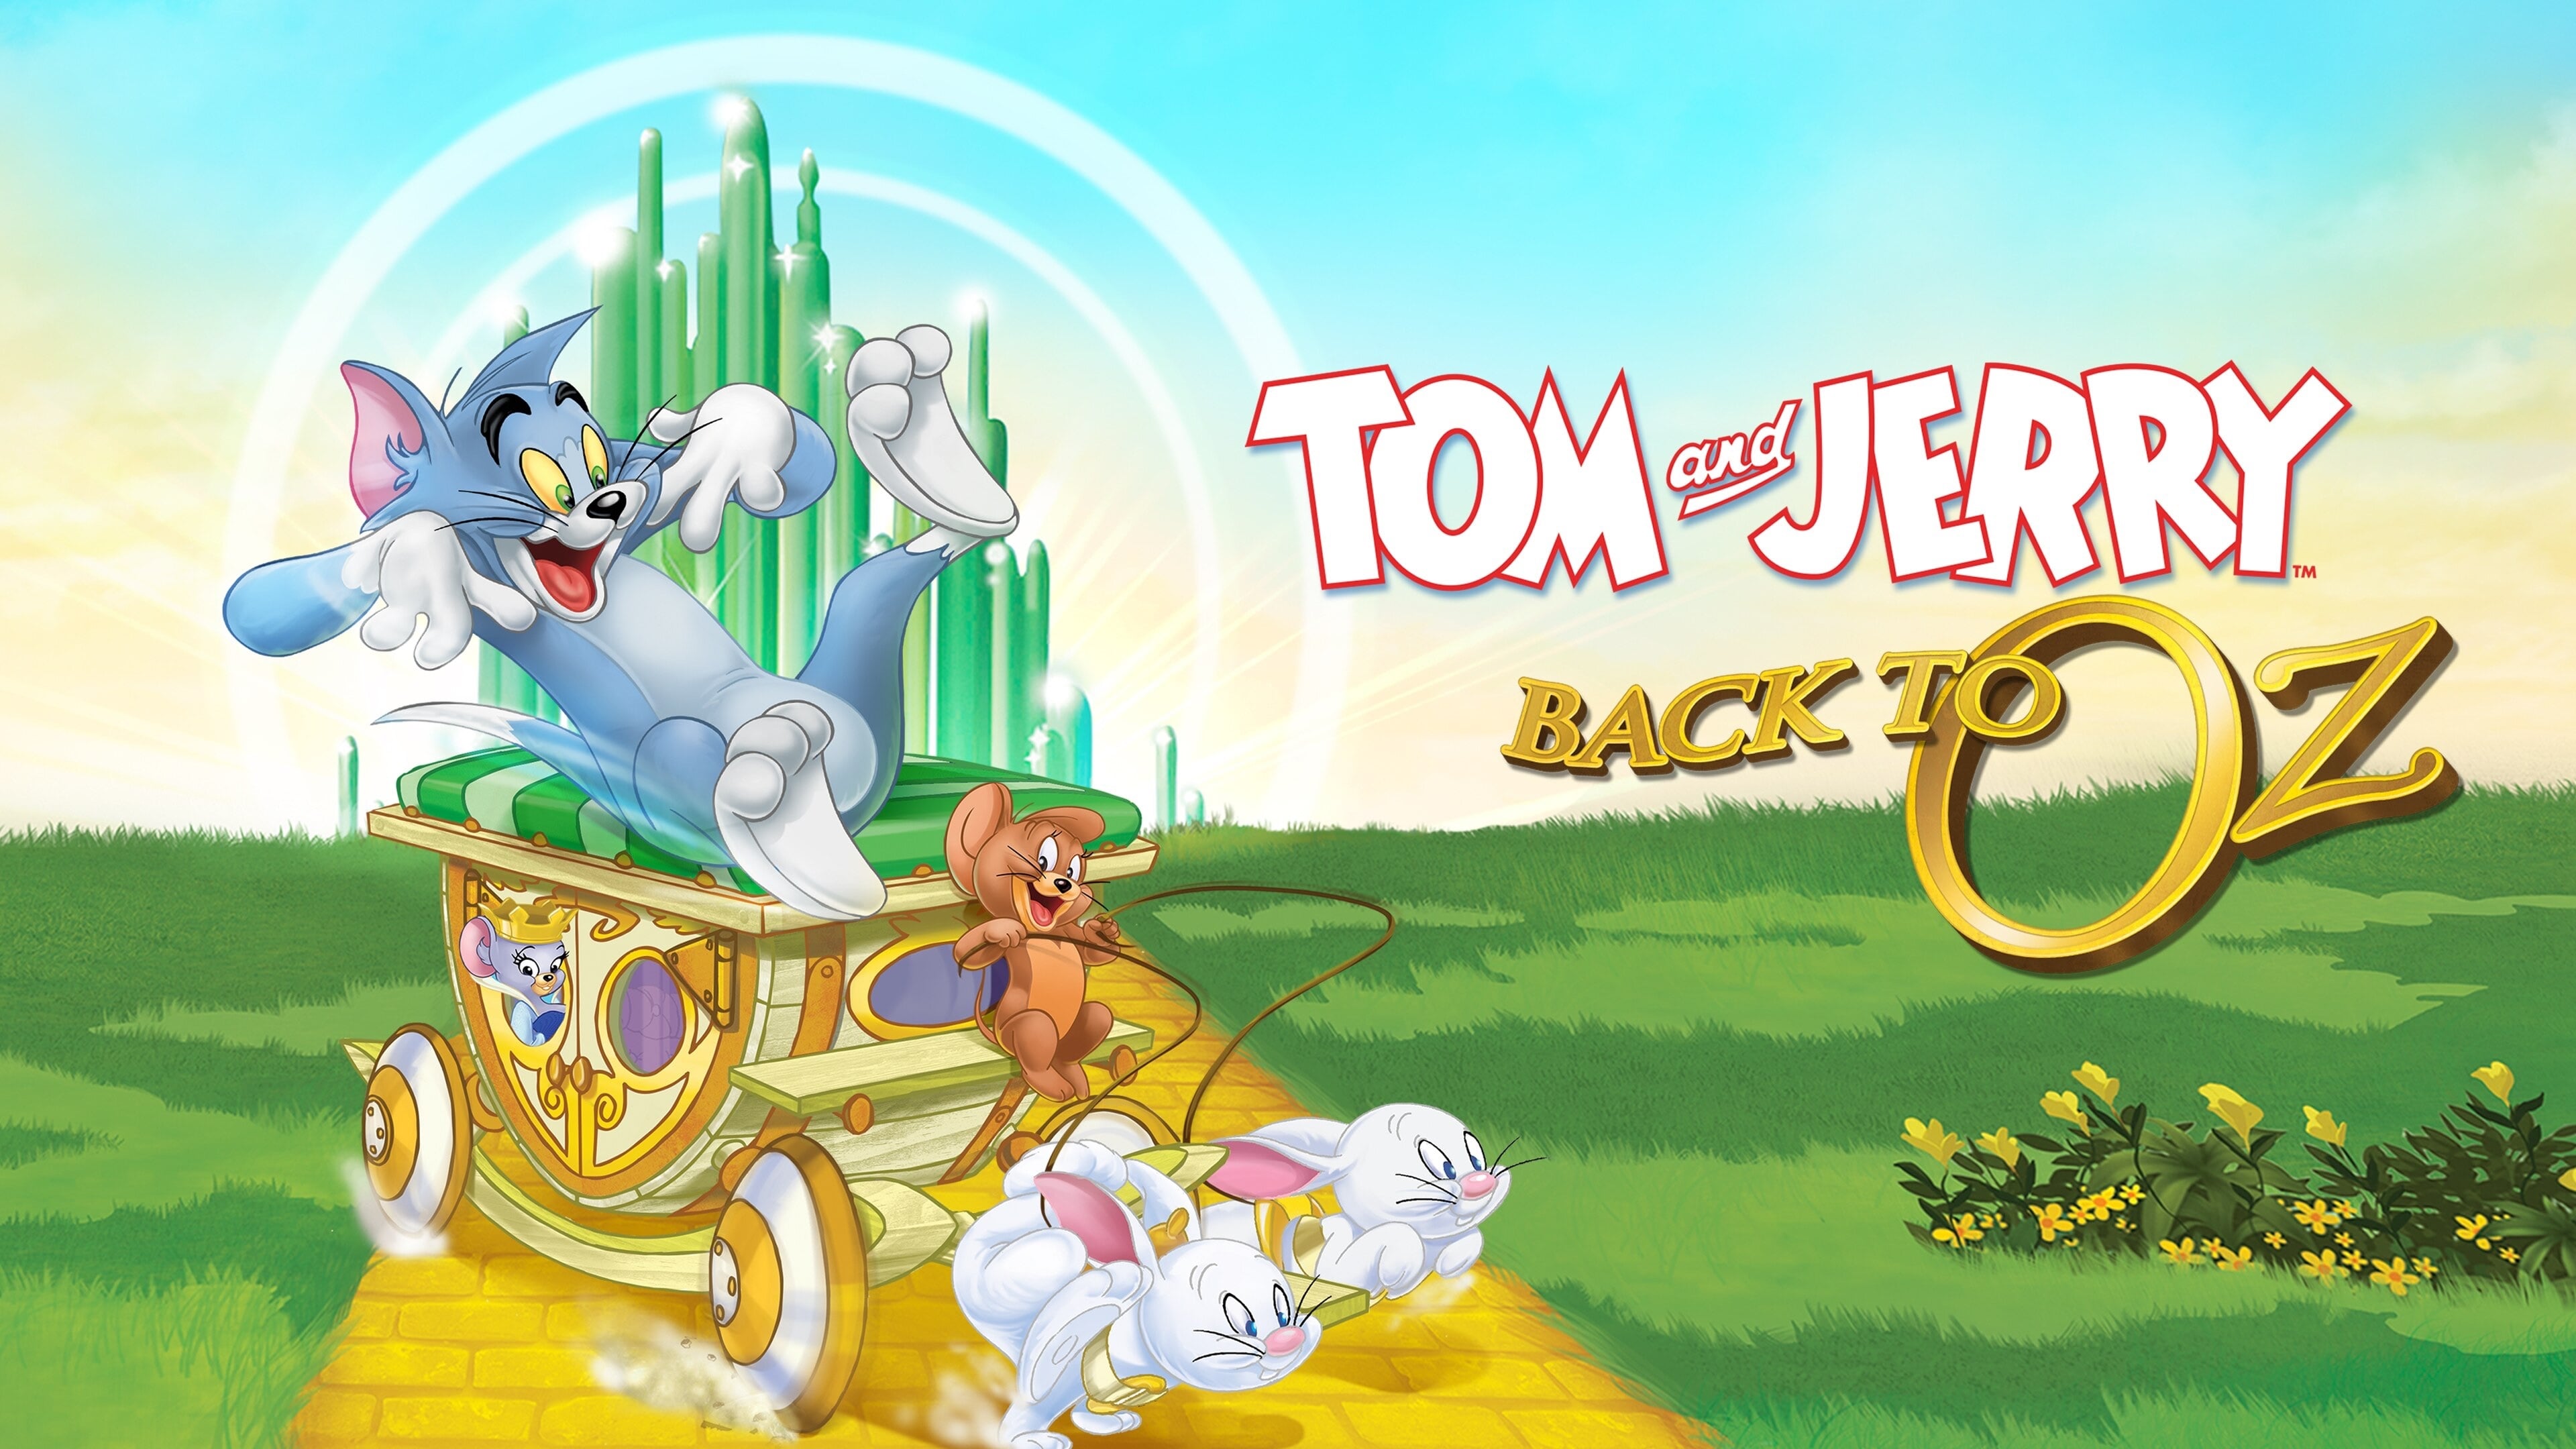 Tom ve Jerry: Oz'a Dönüş